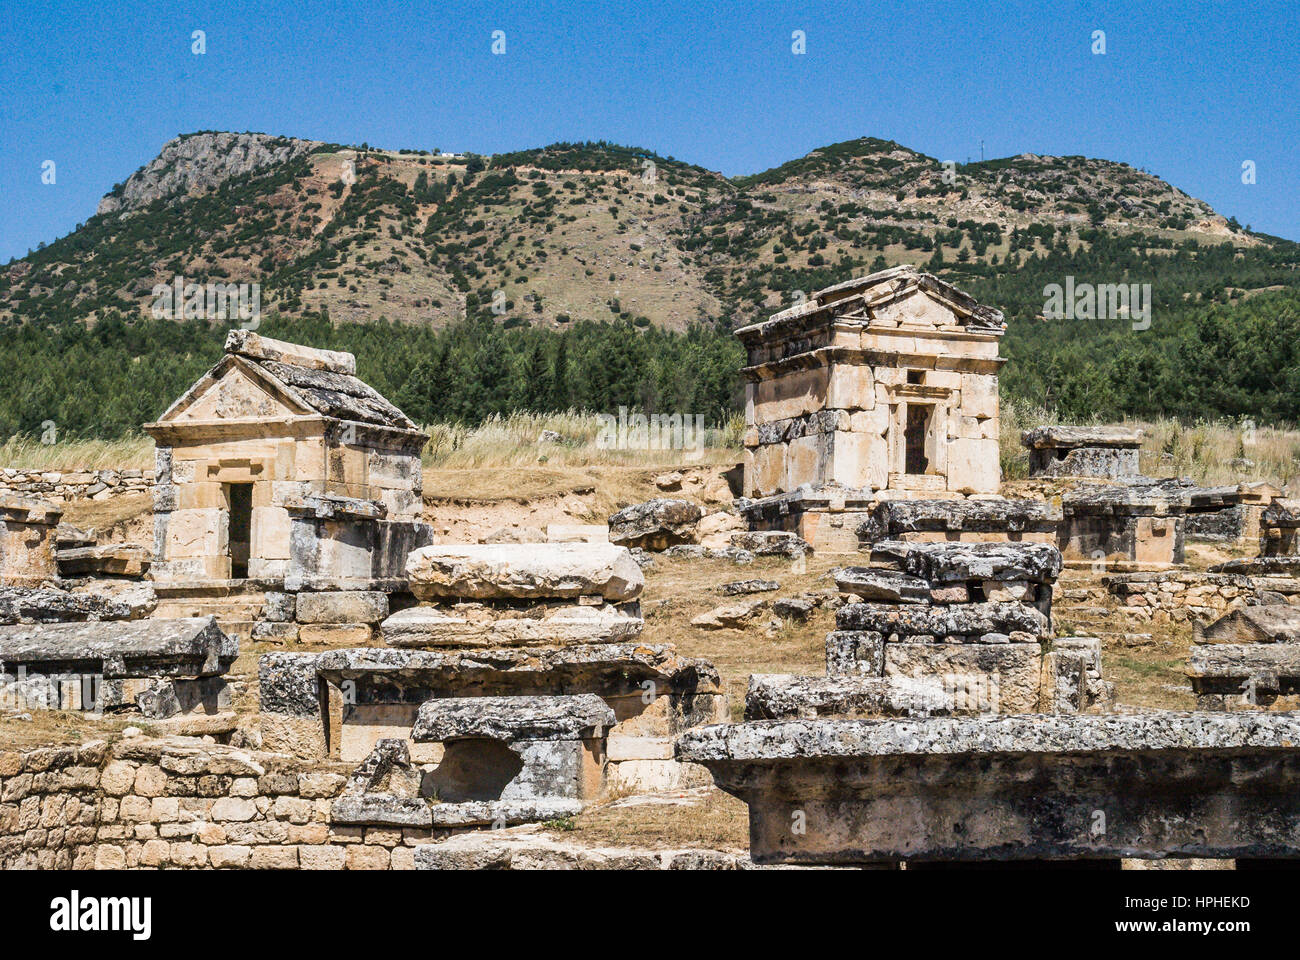 Ruines historique tumulus rock tombs dans l'ancienne ville de Hiérapolis pamukkale turquie, antik tumulus kaya mezarlari,hiérapolis pamukkale Banque D'Images